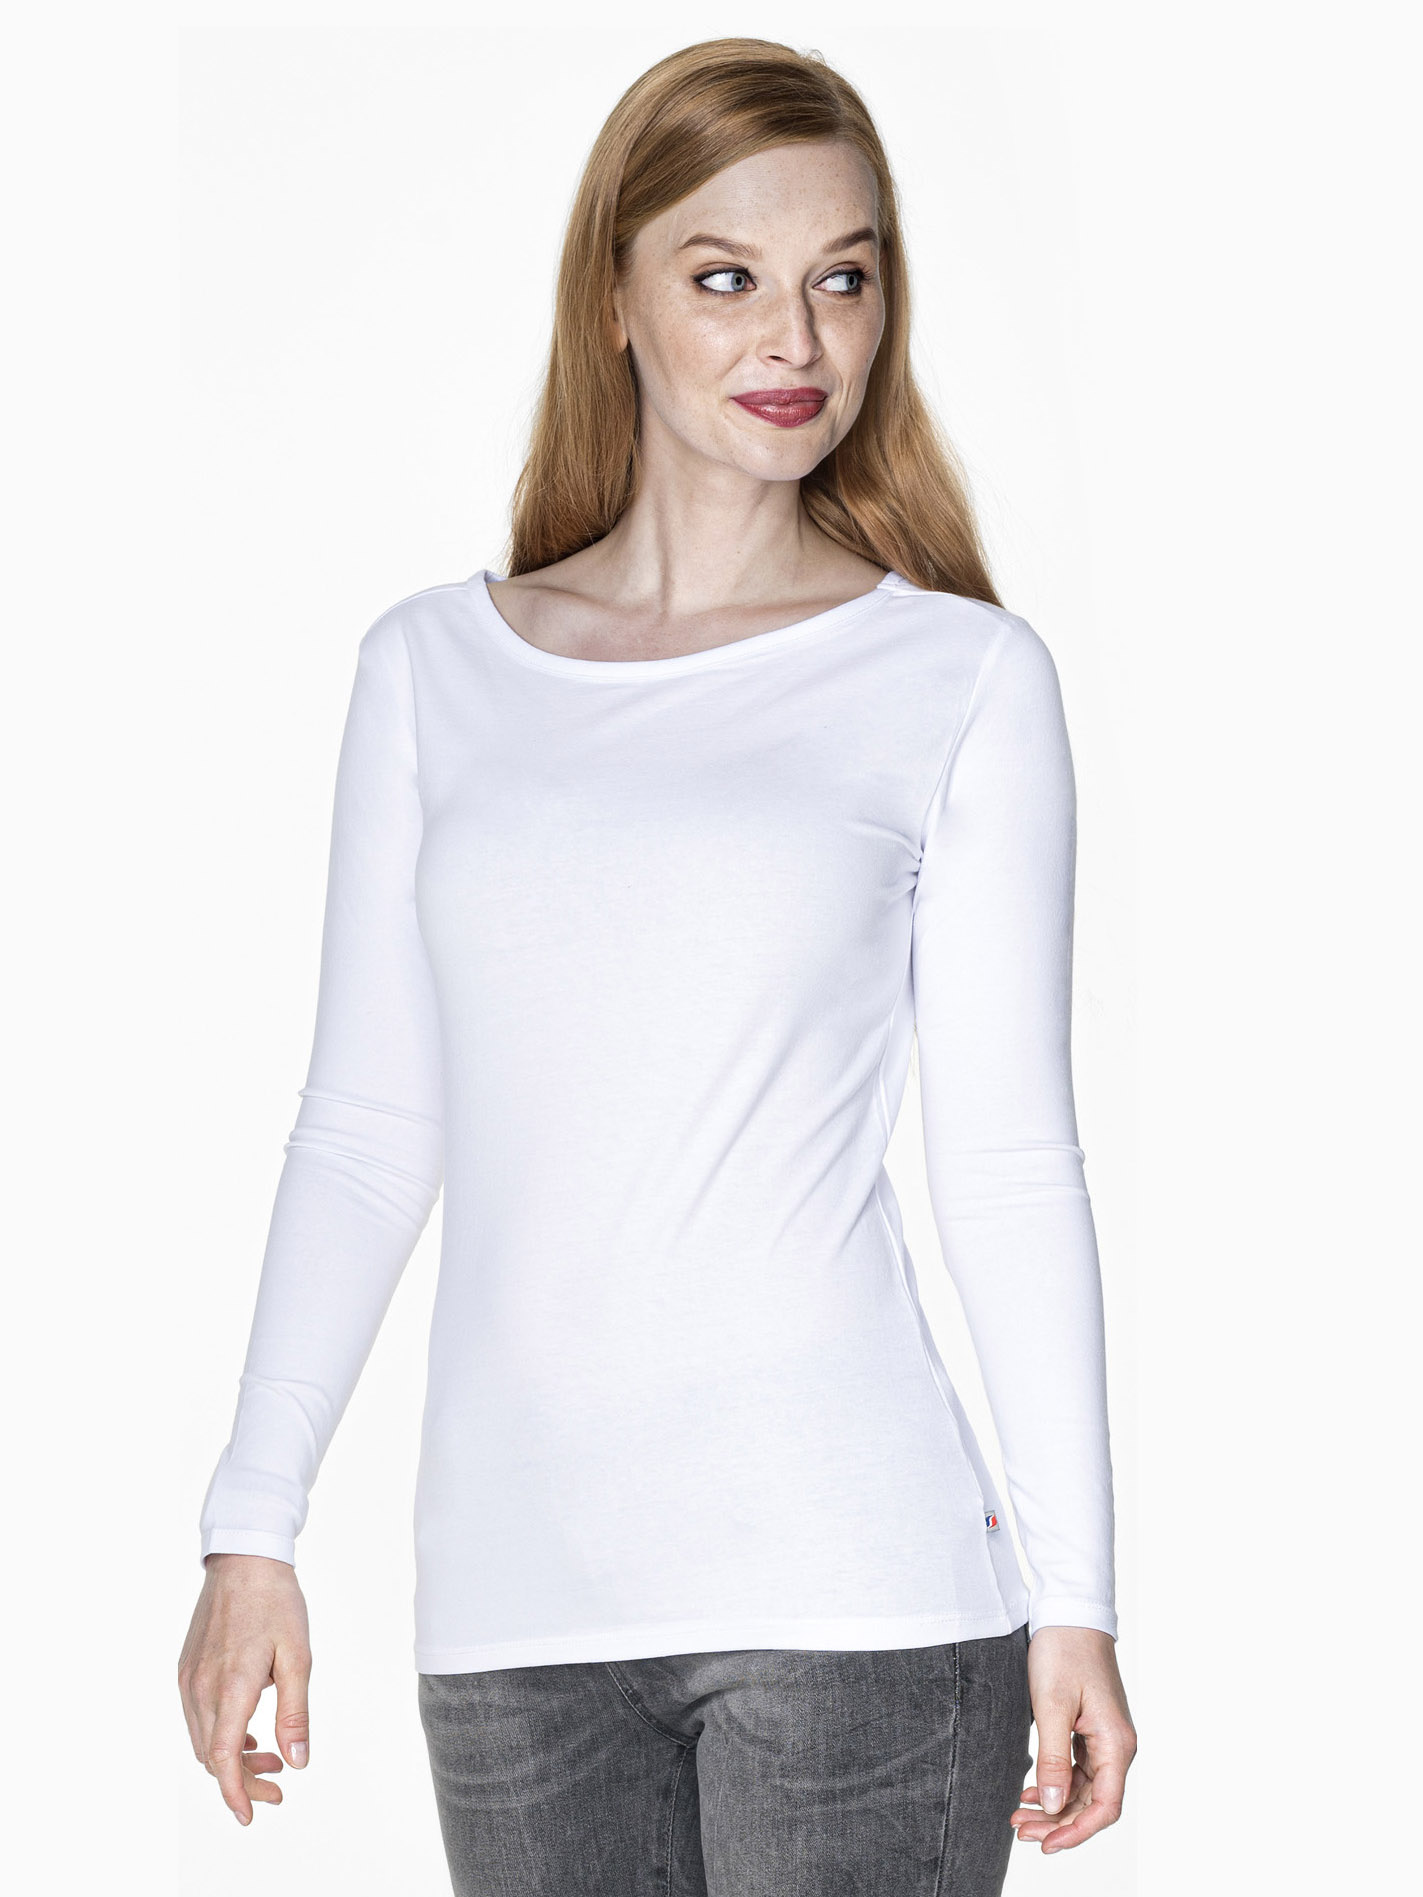 Женская эластичная футболка с длинным рукавом Promostars 21433 Voyage Lycra